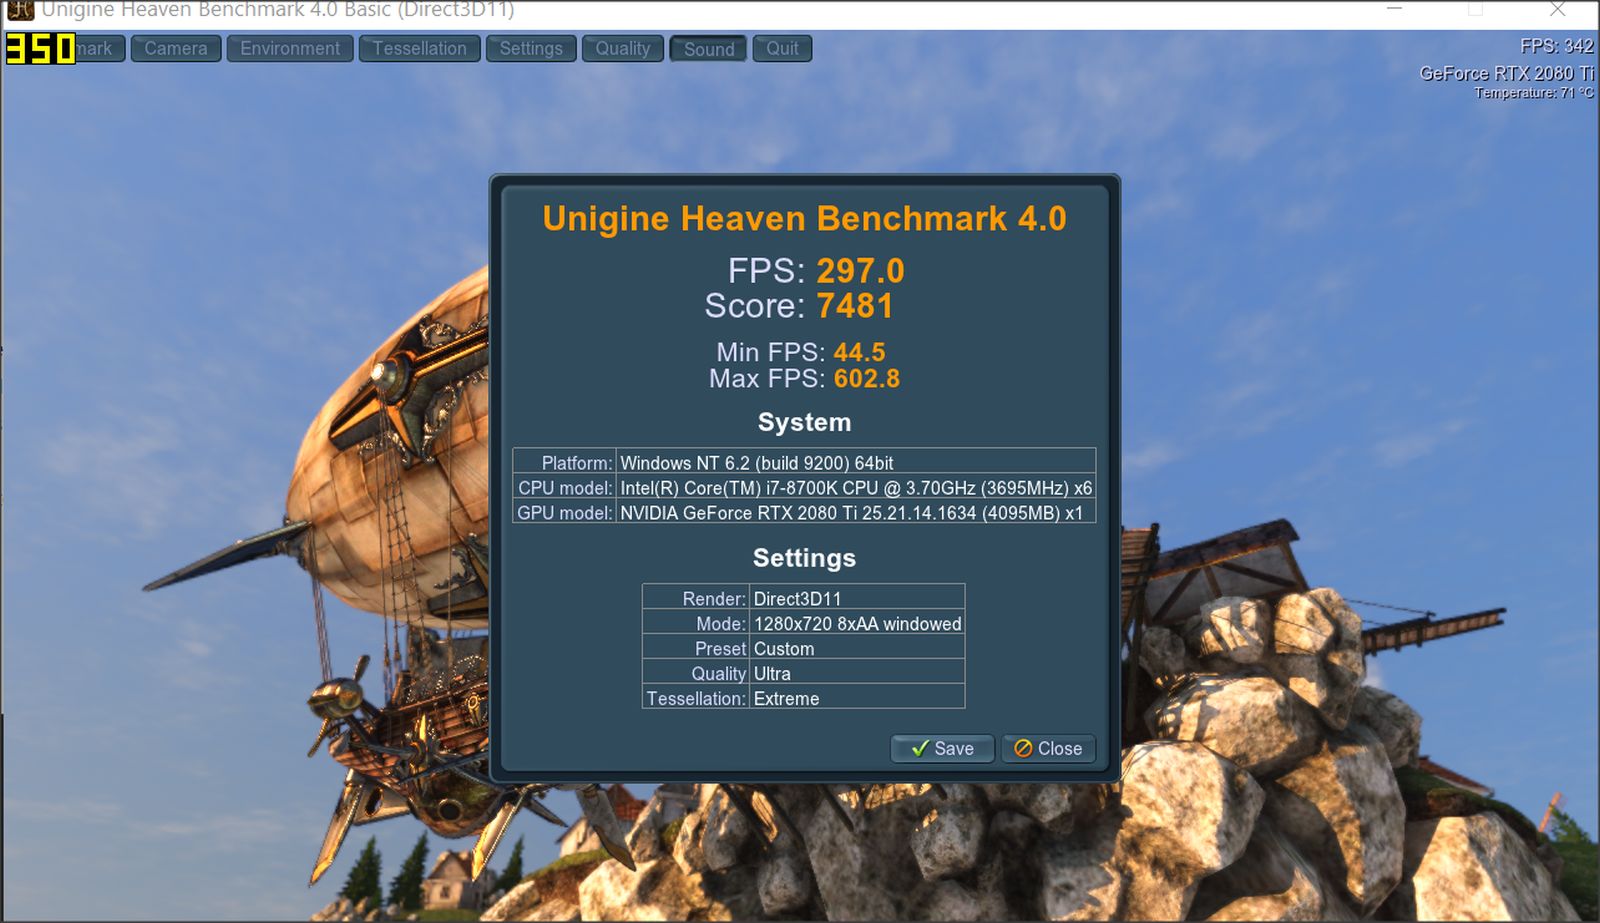 unigine heaven benchmark score 3996